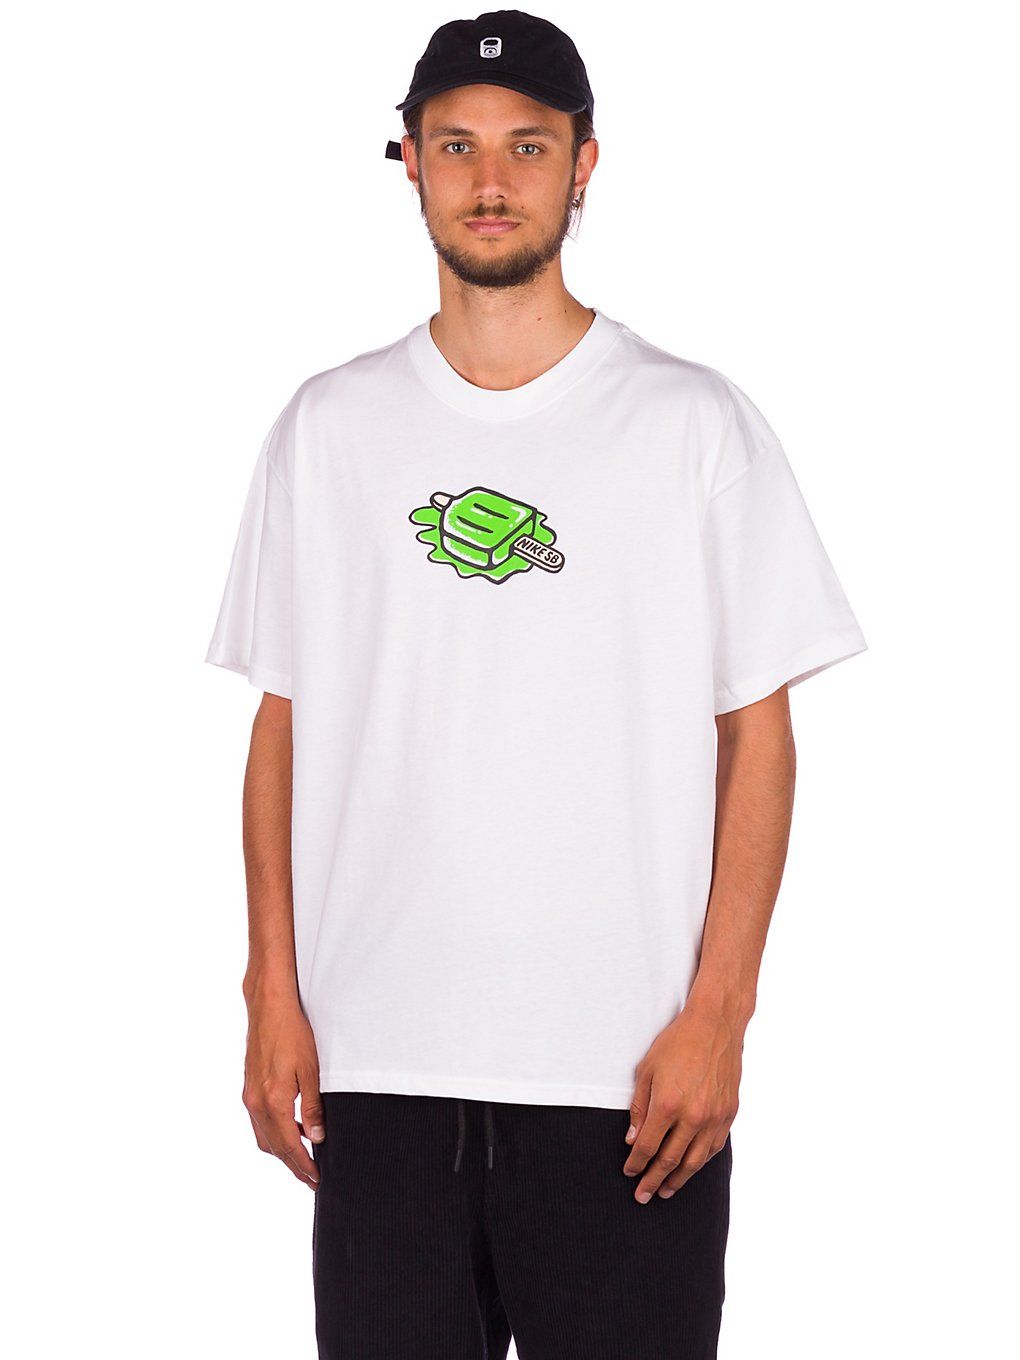 Nike SB Popsicle T-Shirt white